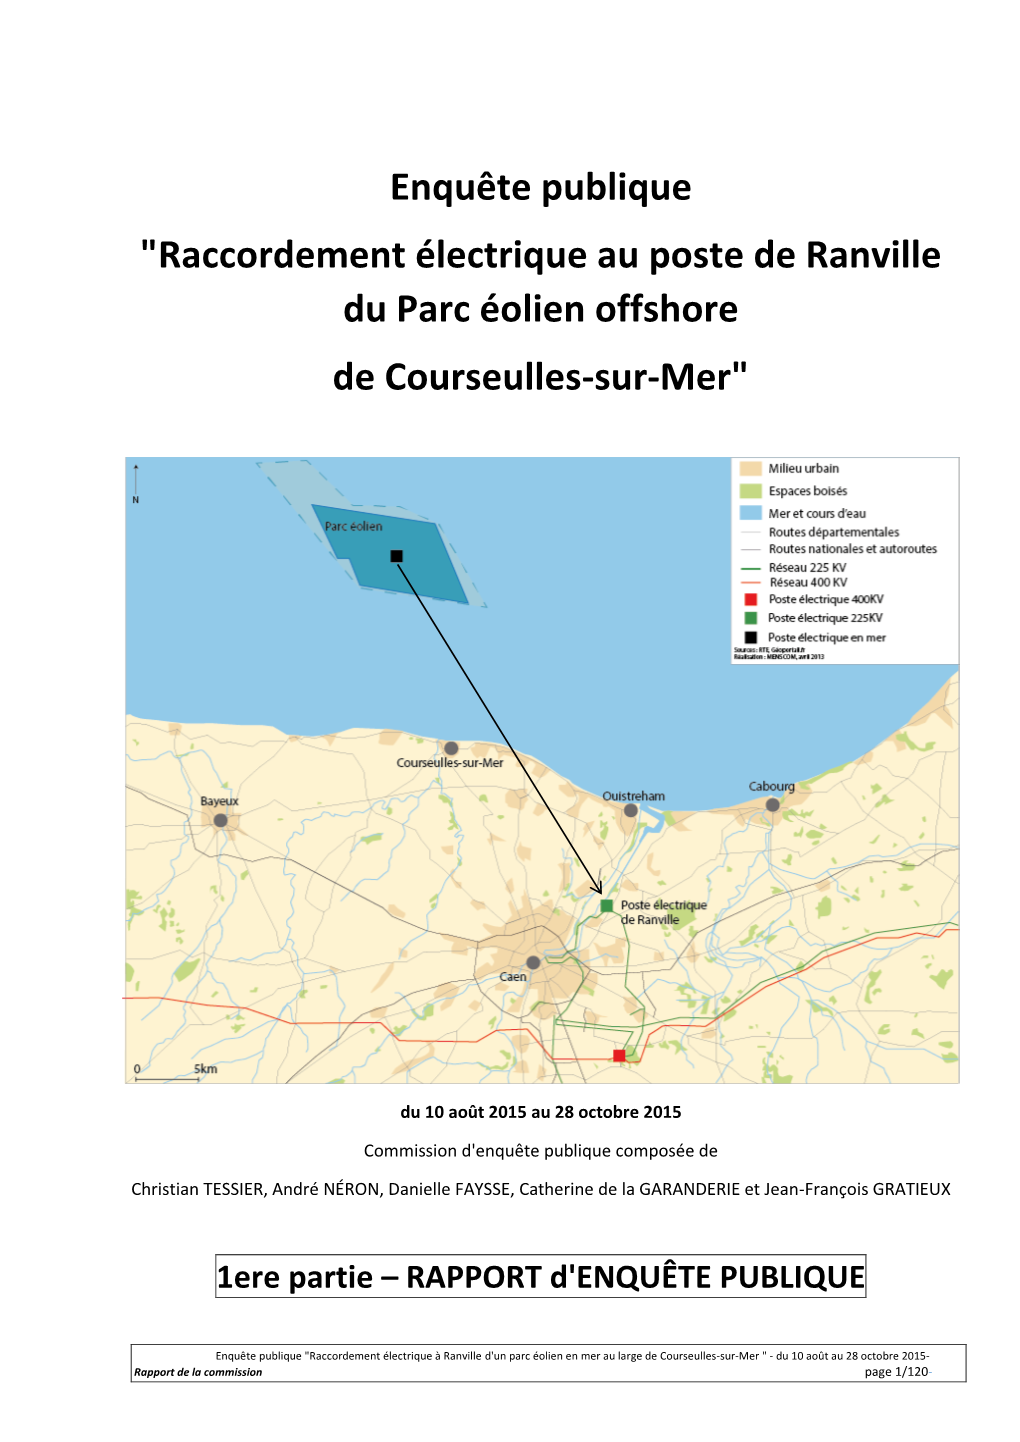 Raccordement Électrique Au Poste De Ranville Du Parc Éolien Offshore De Courseulles-Sur-Mer"